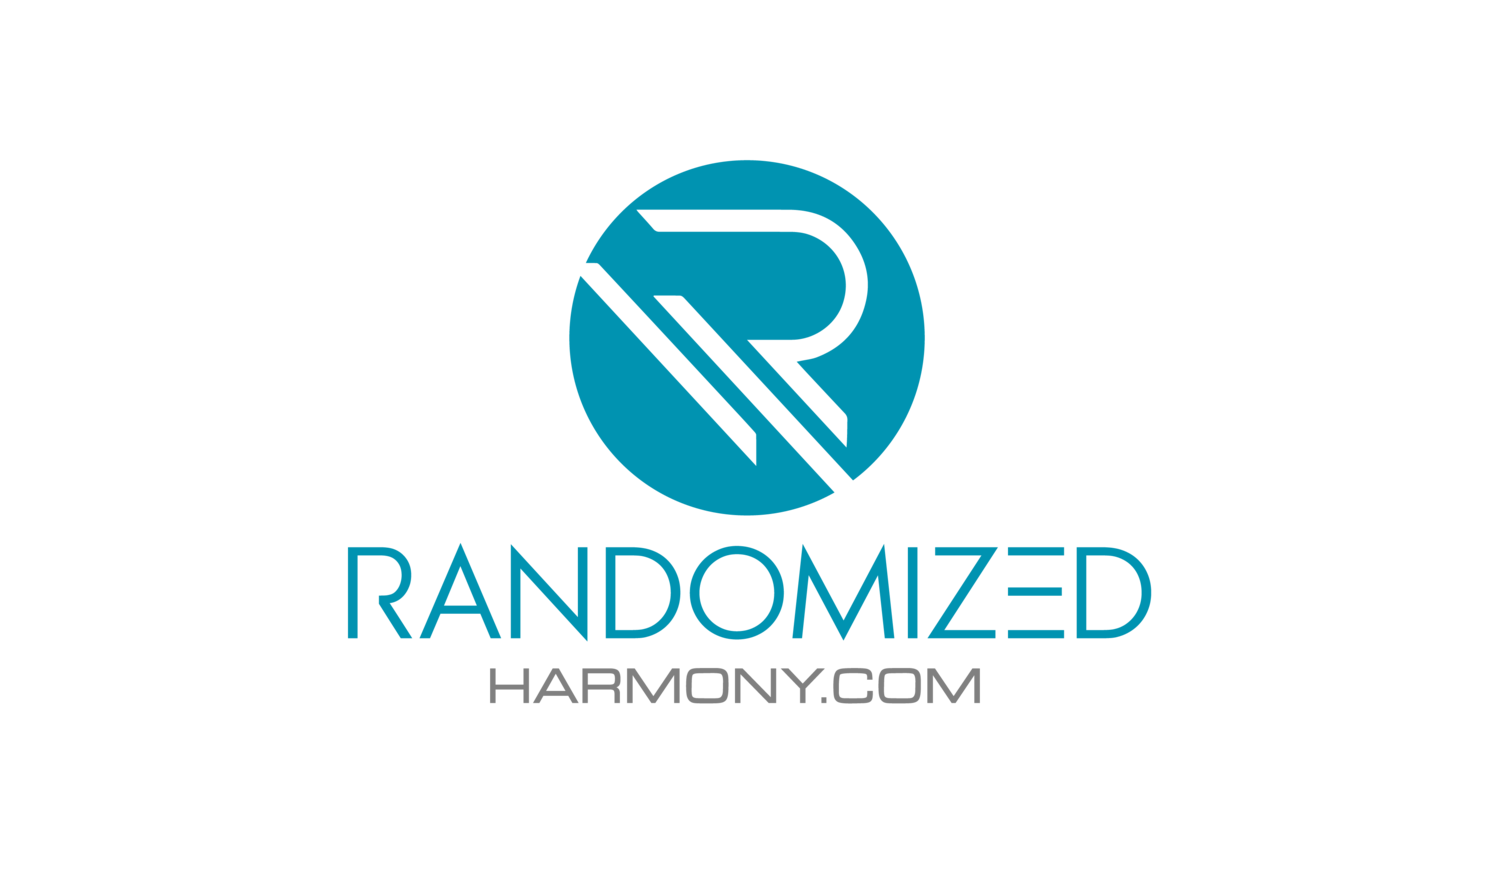 RandomizedHarmony